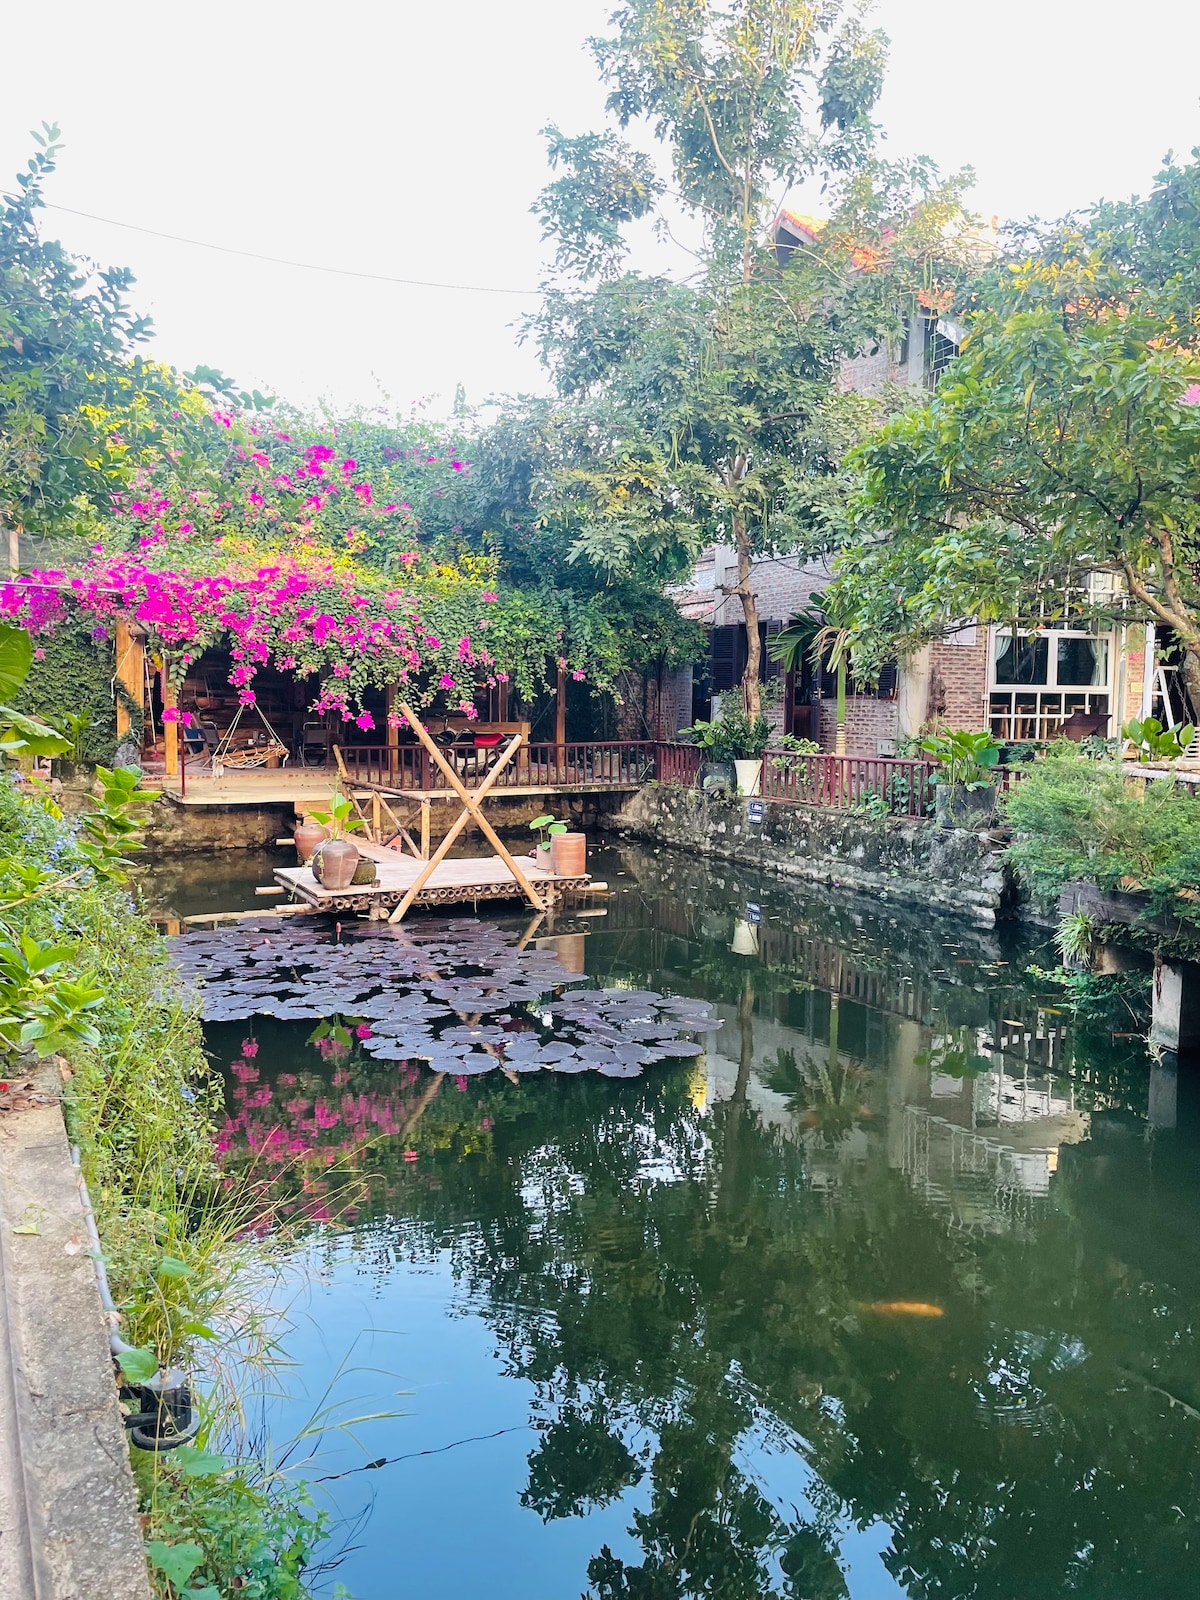 Morning calm garden villa - Ninh binh